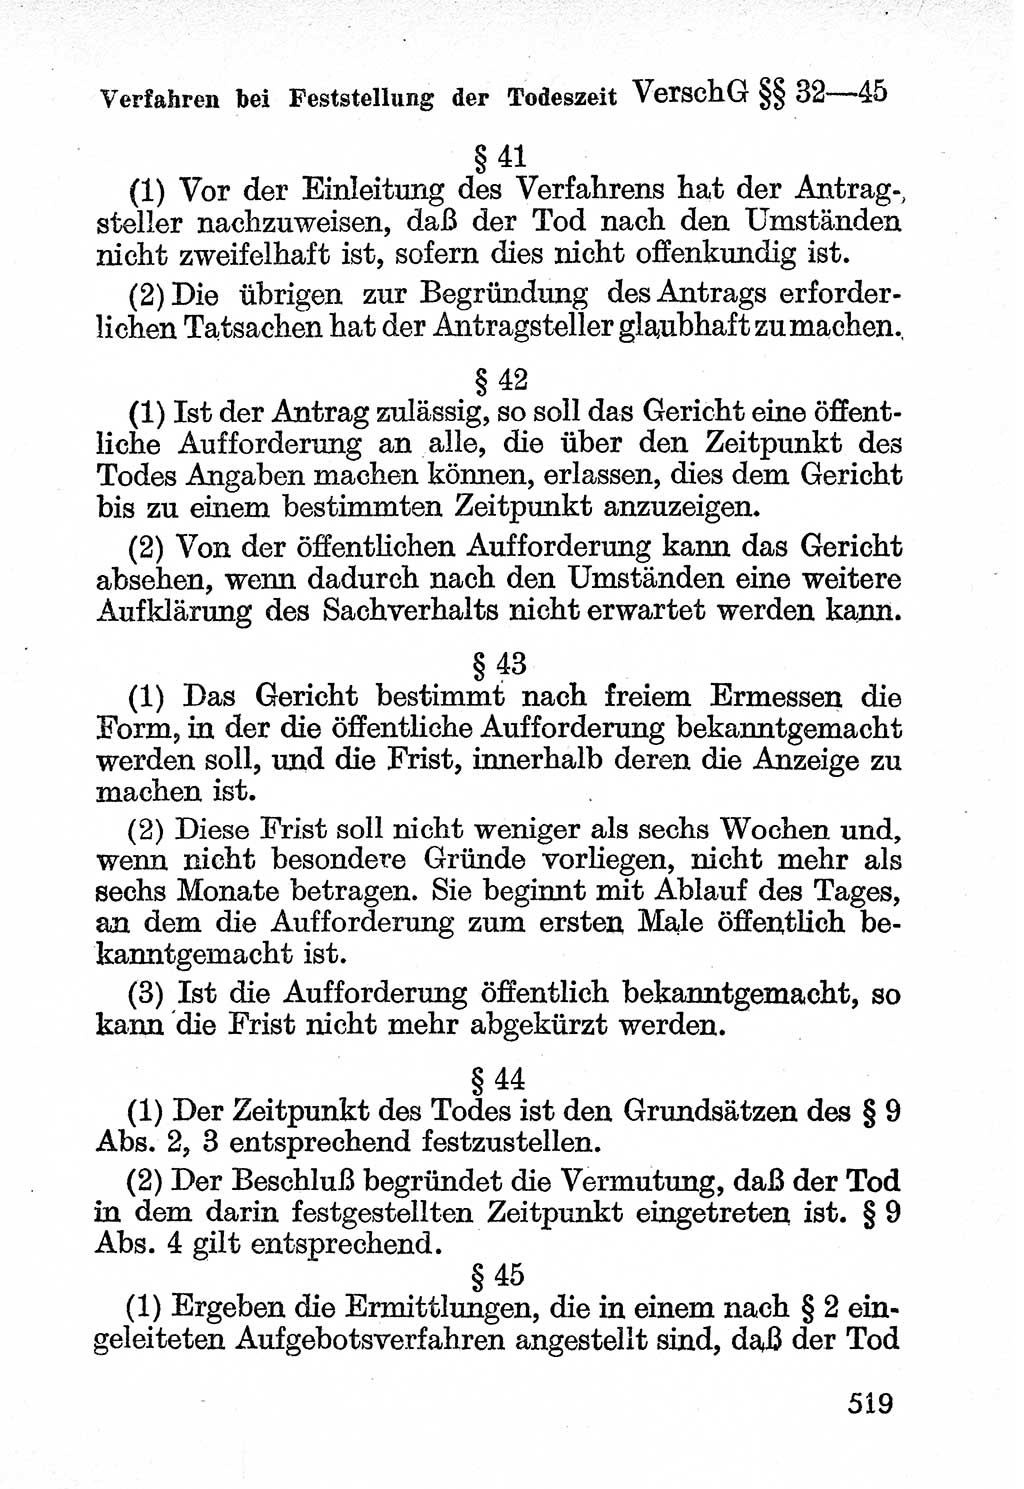 Bürgerliches Gesetzbuch (BGB) nebst wichtigen Nebengesetzen [Deutsche Demokratische Republik (DDR)] 1956, Seite 519 (BGB Nebenges. DDR 1956, S. 519)